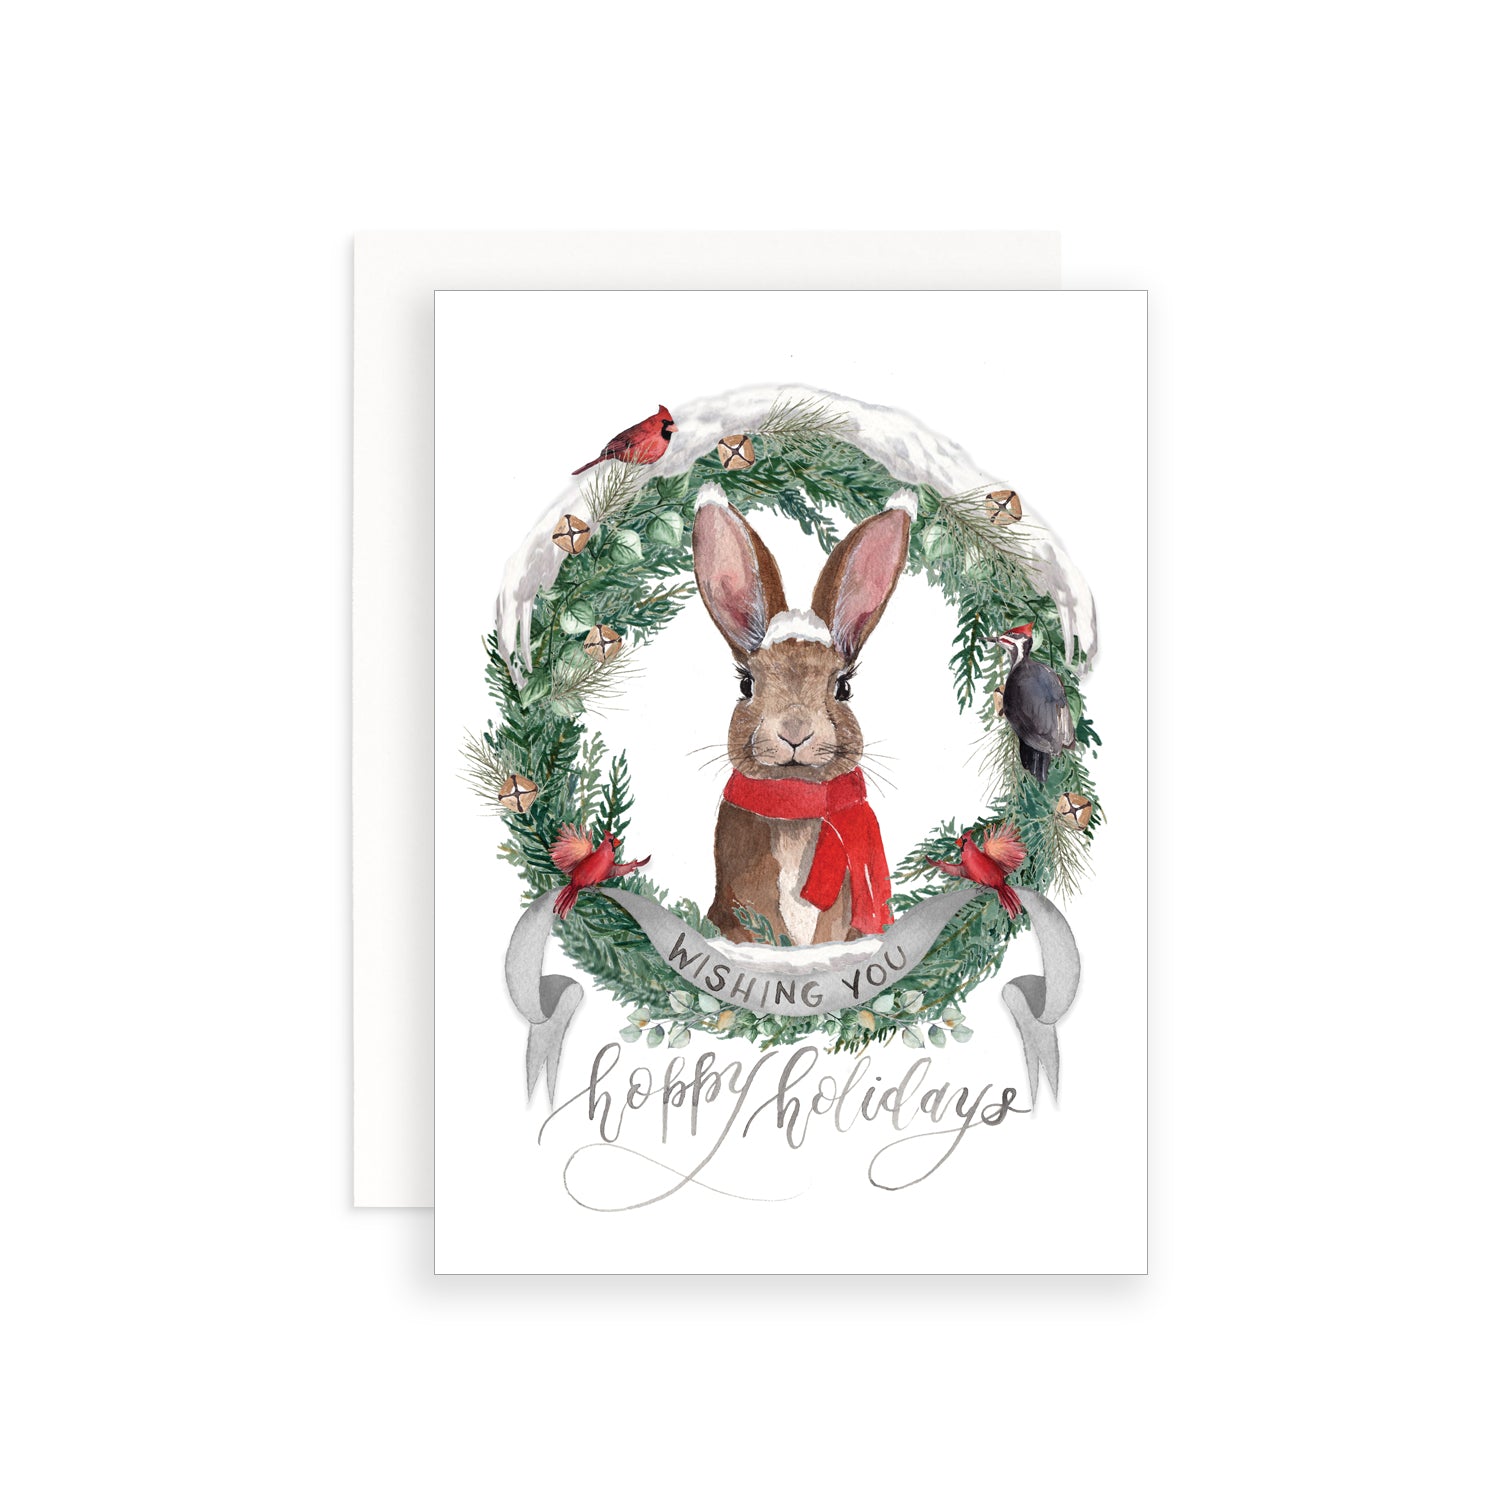 Wishing You Hoppy Holidays Greeting Card